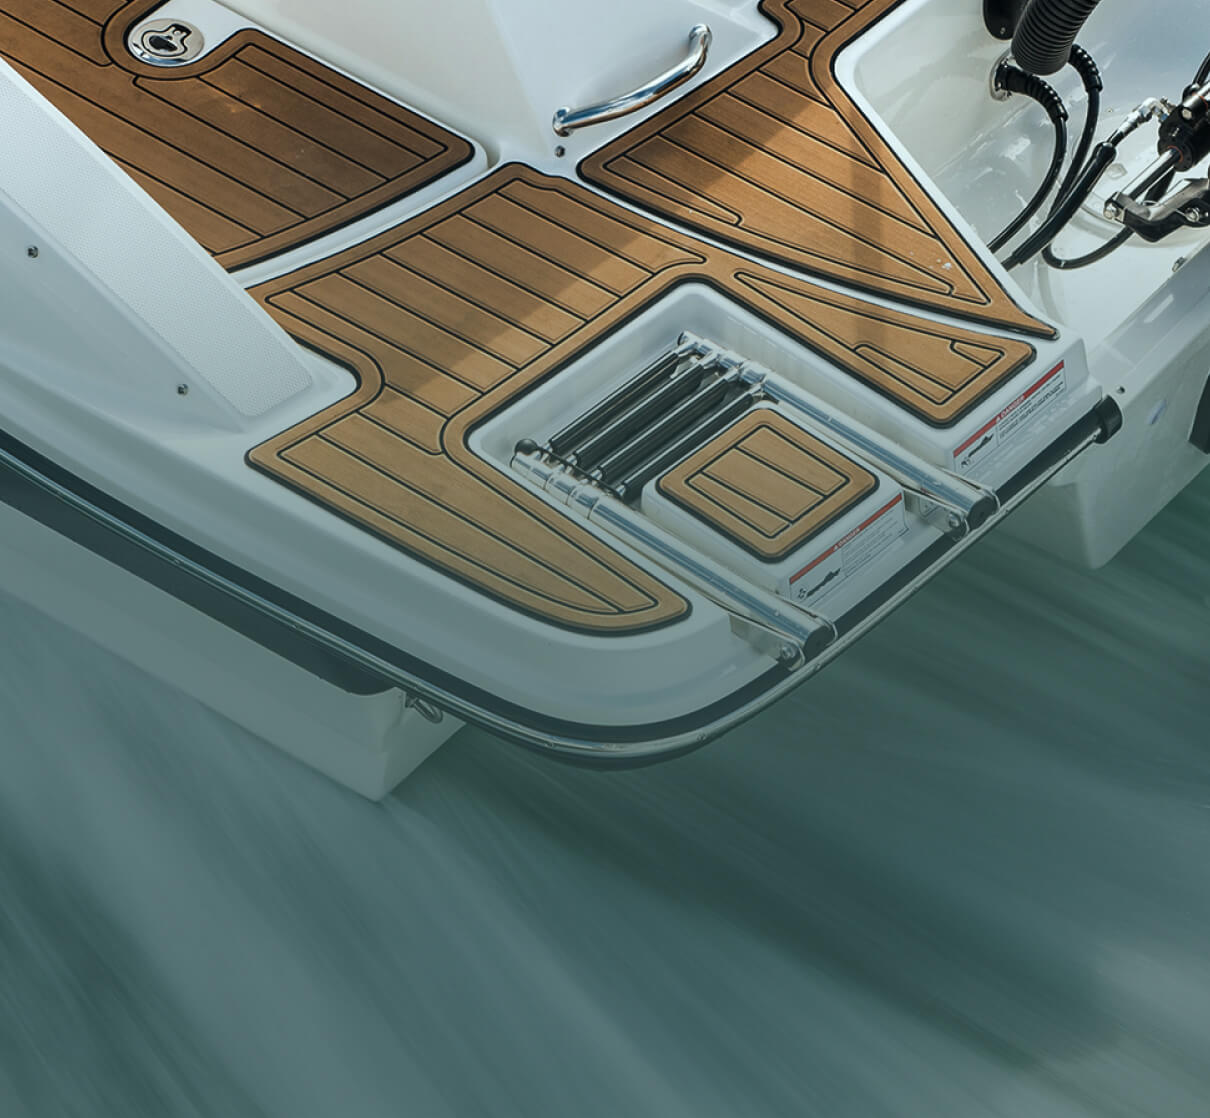 A closeup of a boat.